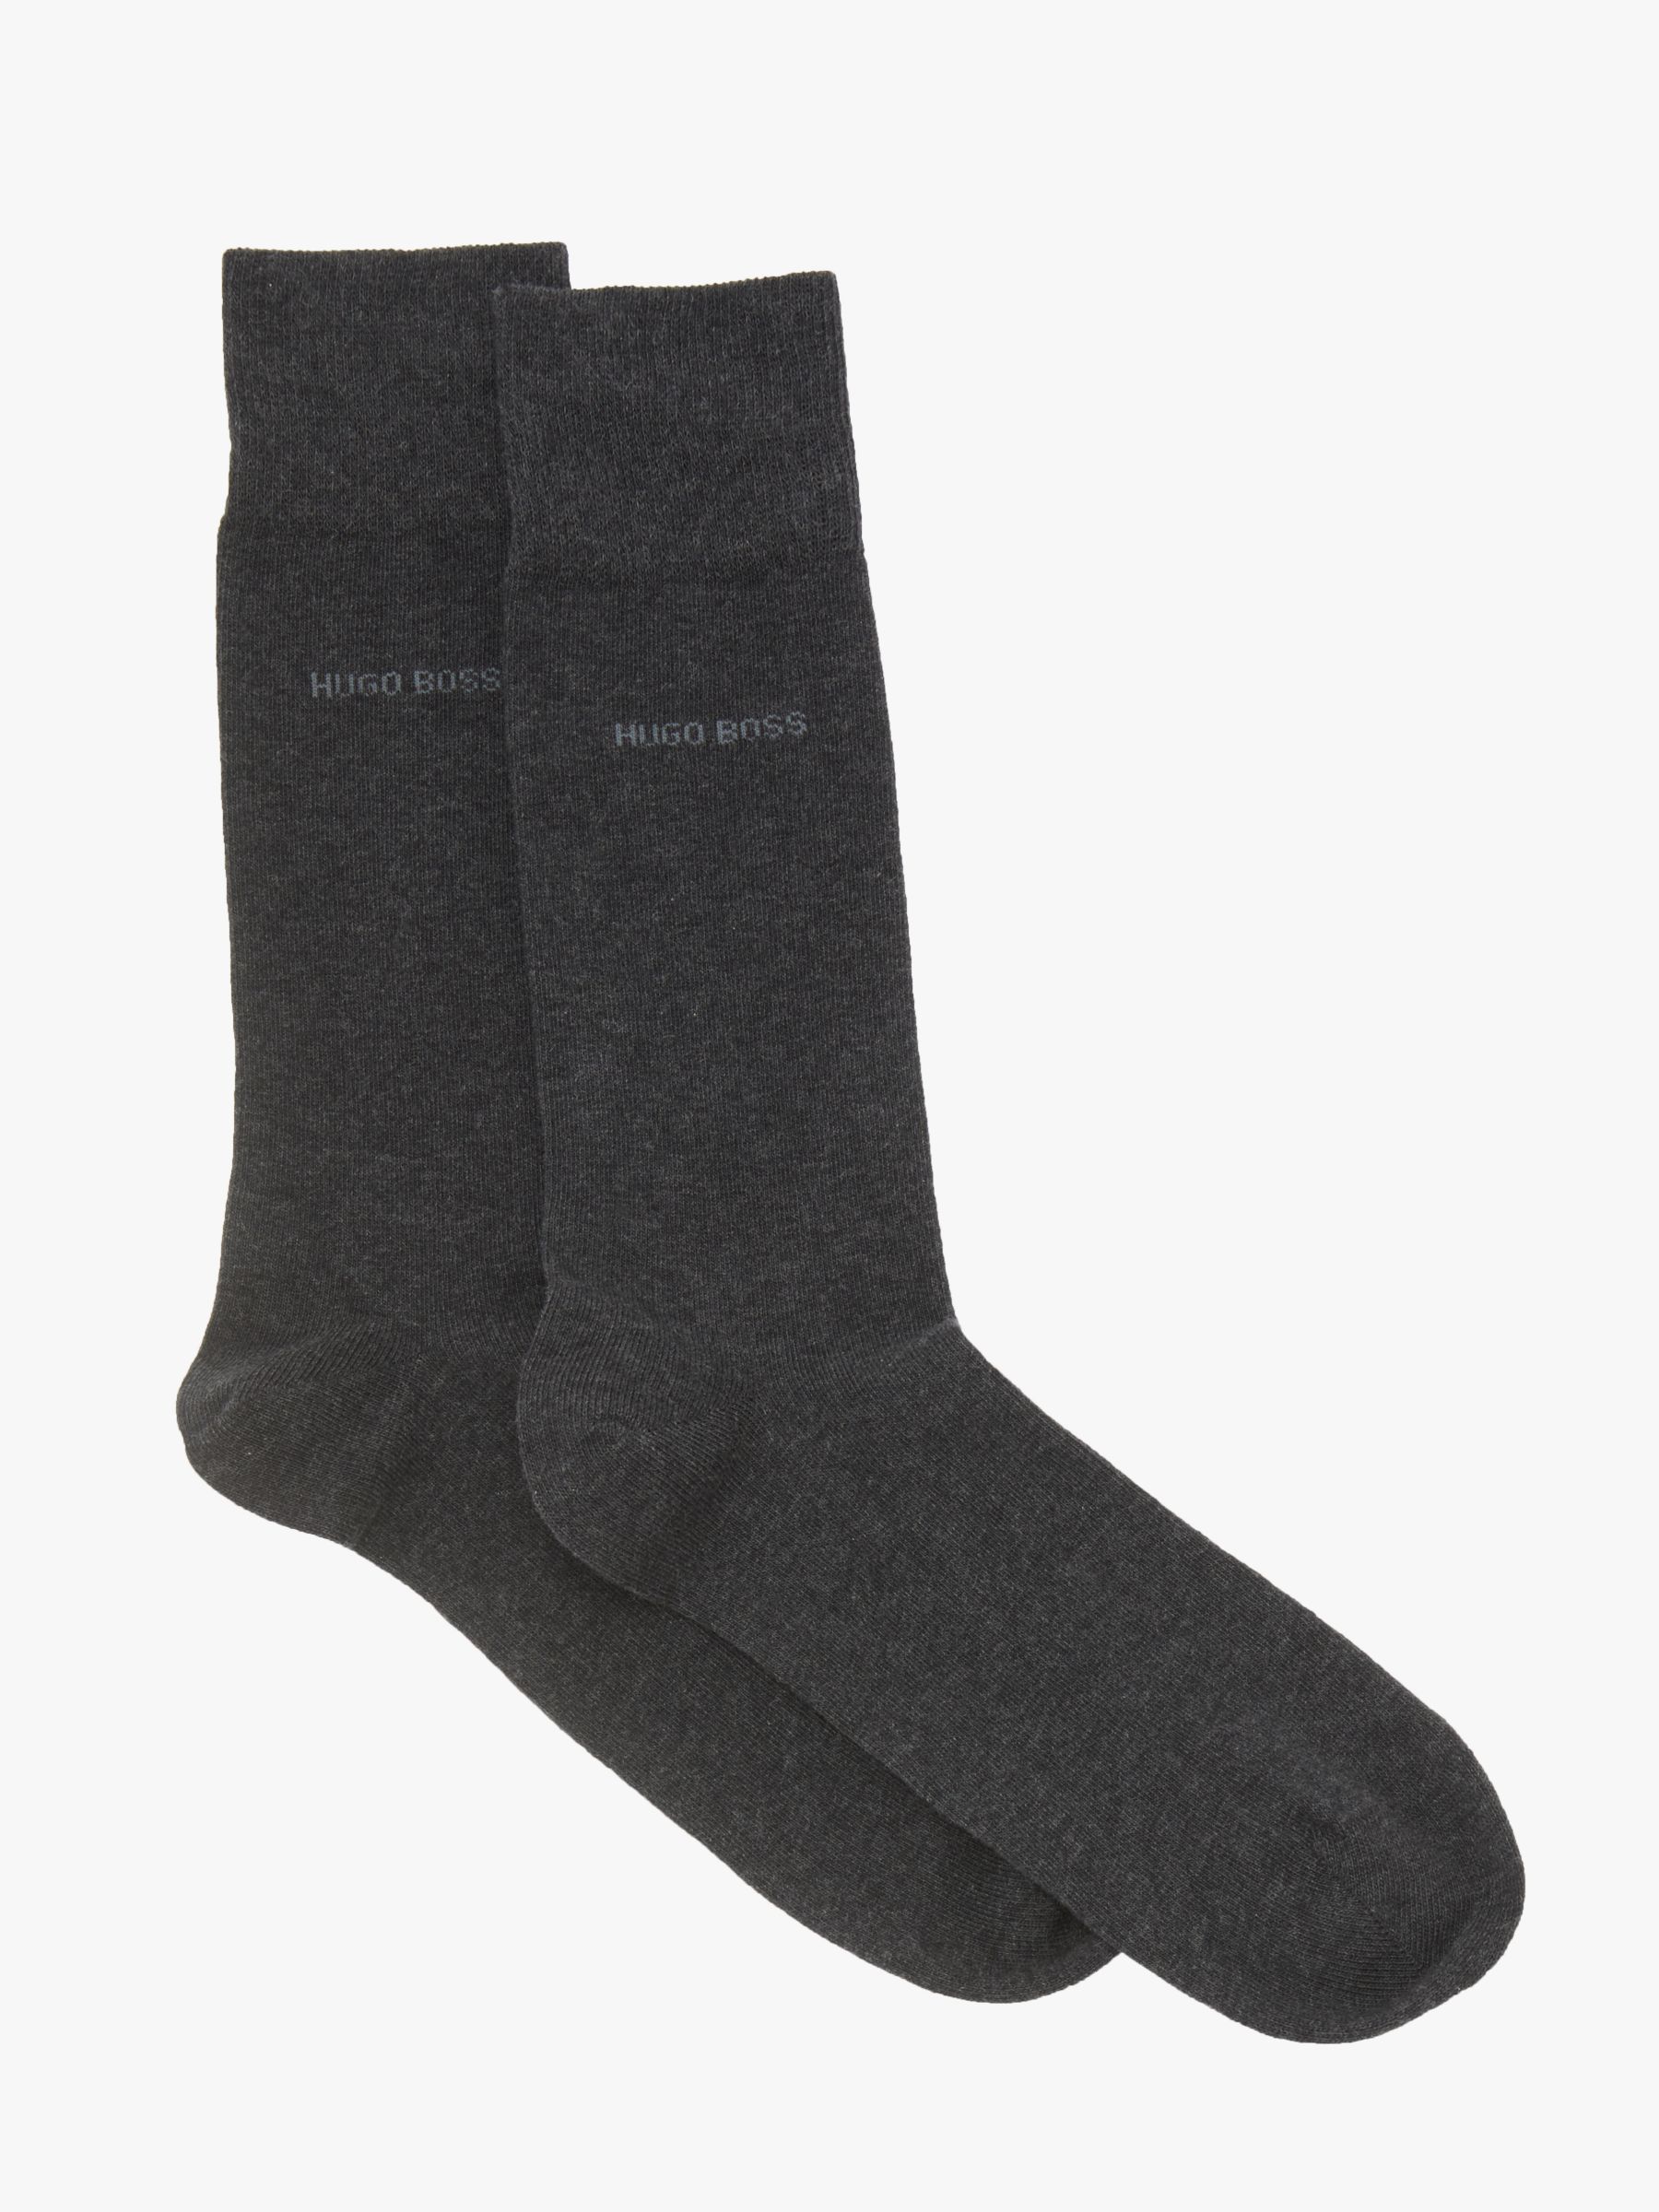 BOSS Plain Socks, Pack of 2